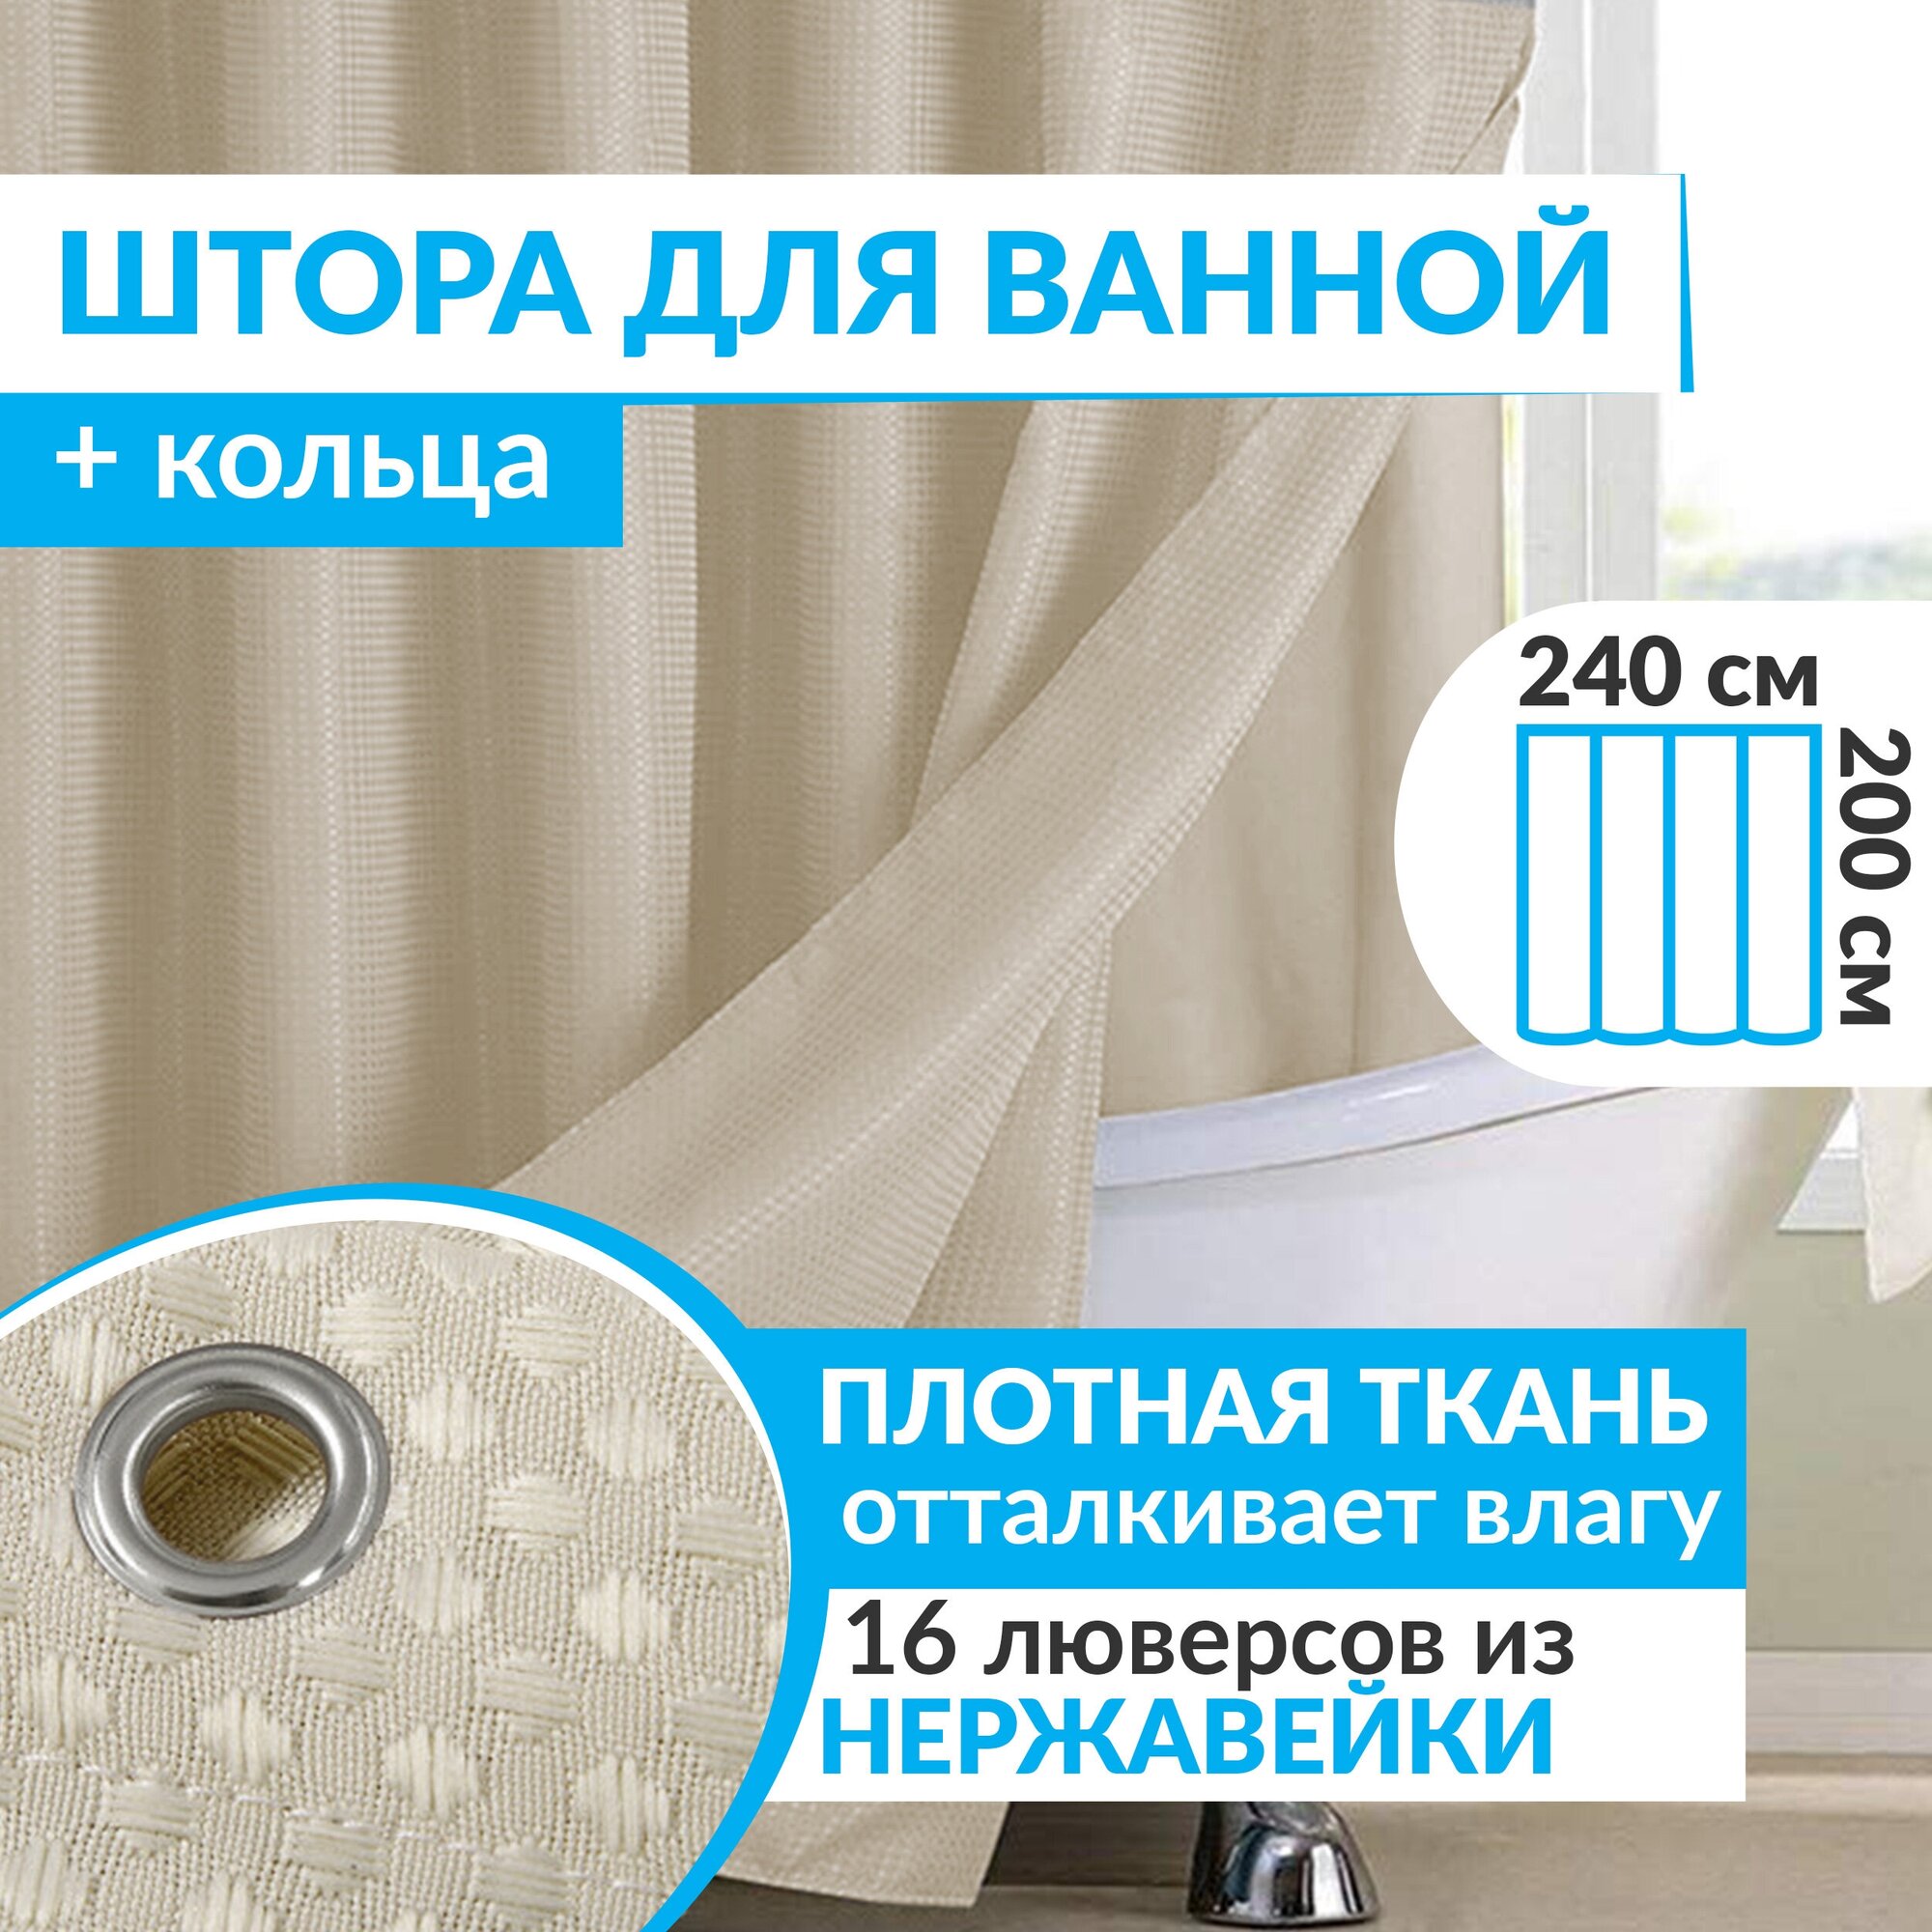 Штора для ванной WAFFLE 240х200 см плотная ткань с водоотталкивающей пропиткой